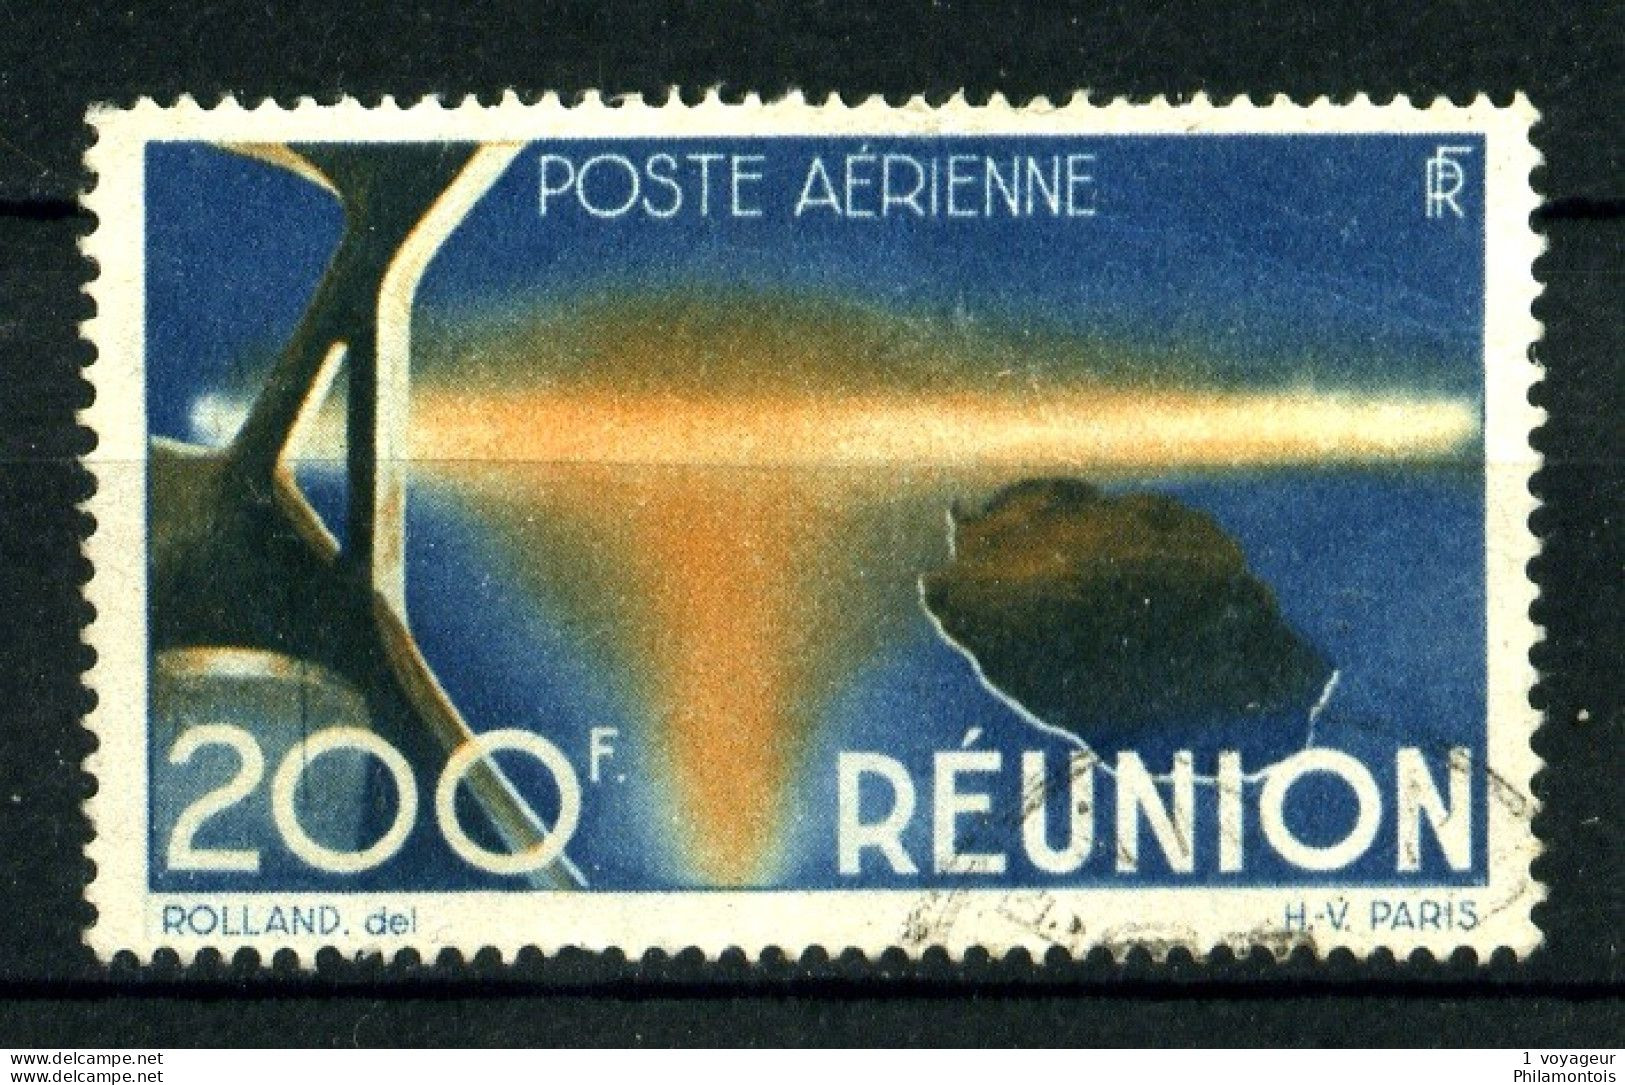 REUNION - PA 44 - 200F Bleu Et Orange - Oblitéré  - Très Beau - Poste Aérienne